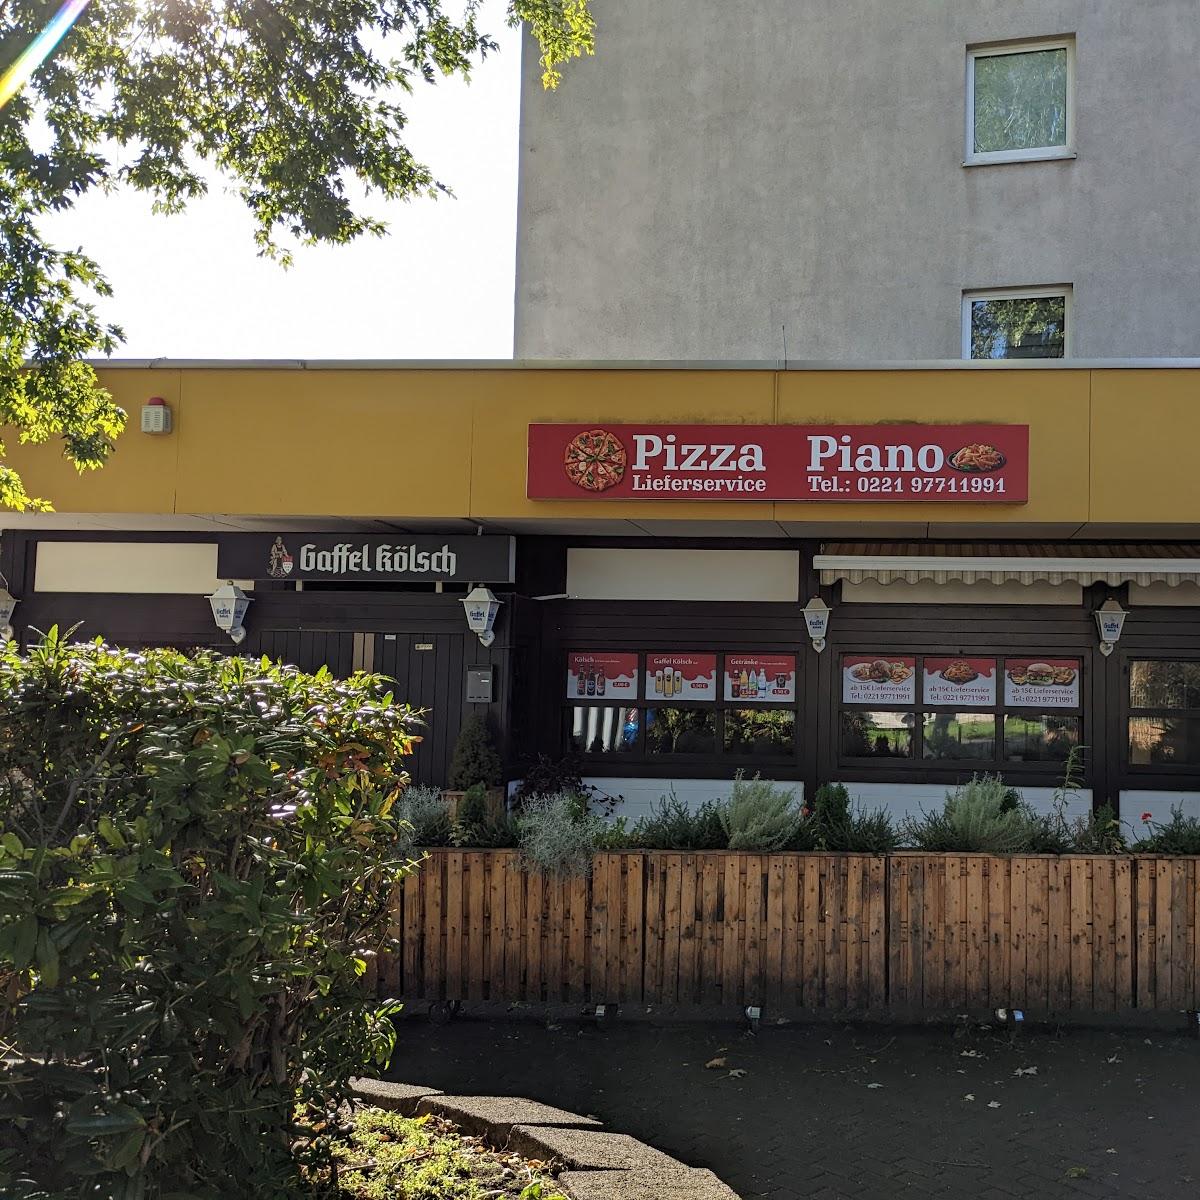 Restaurant "Pizza Piano" in Köln